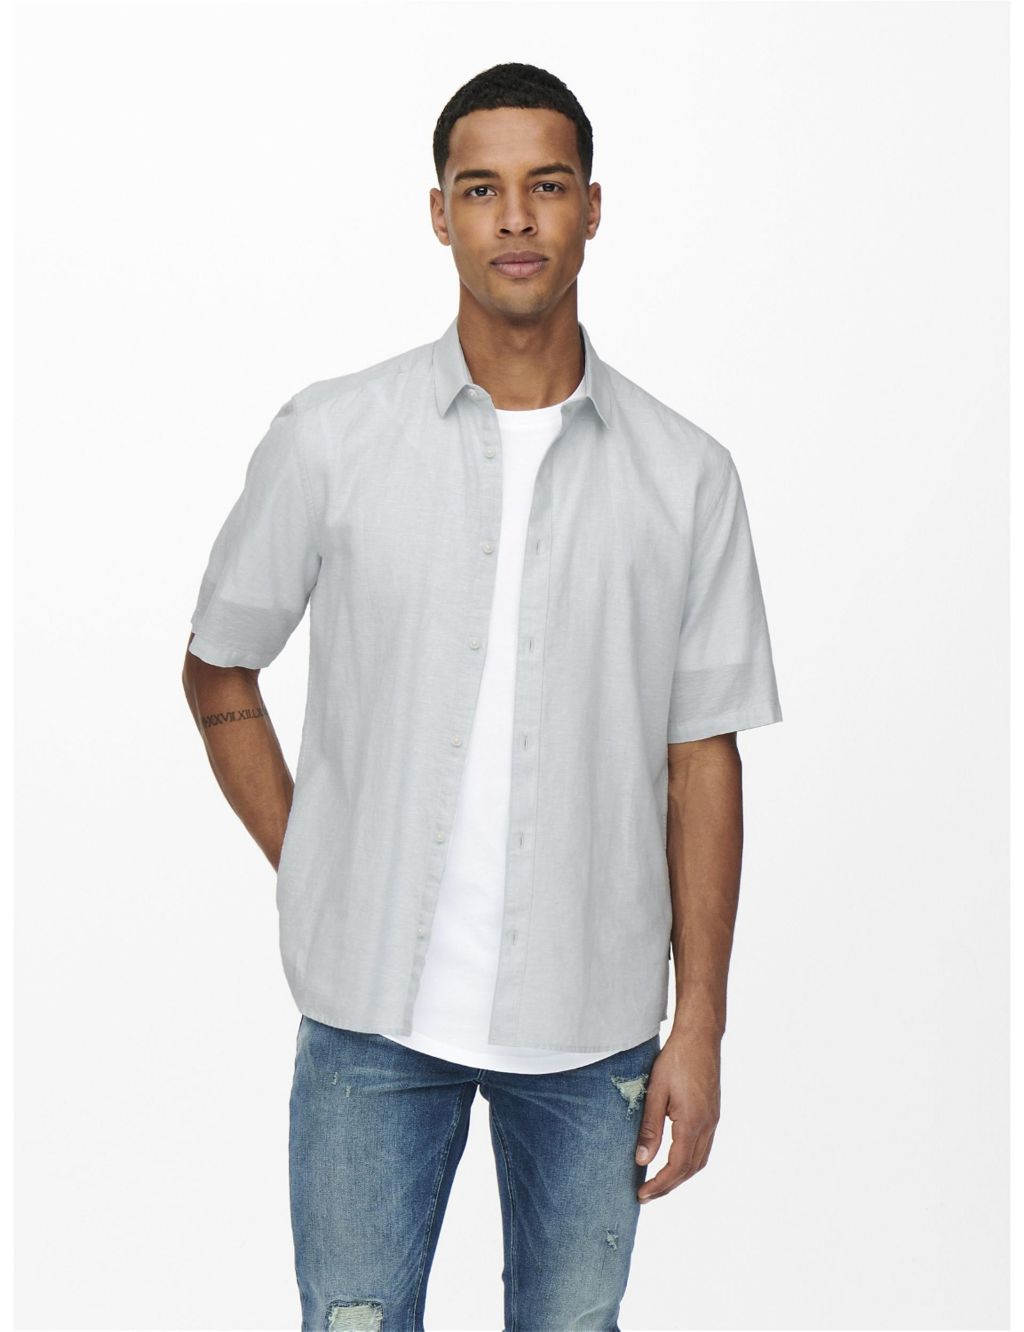 Cotton Linen Blend Shirt